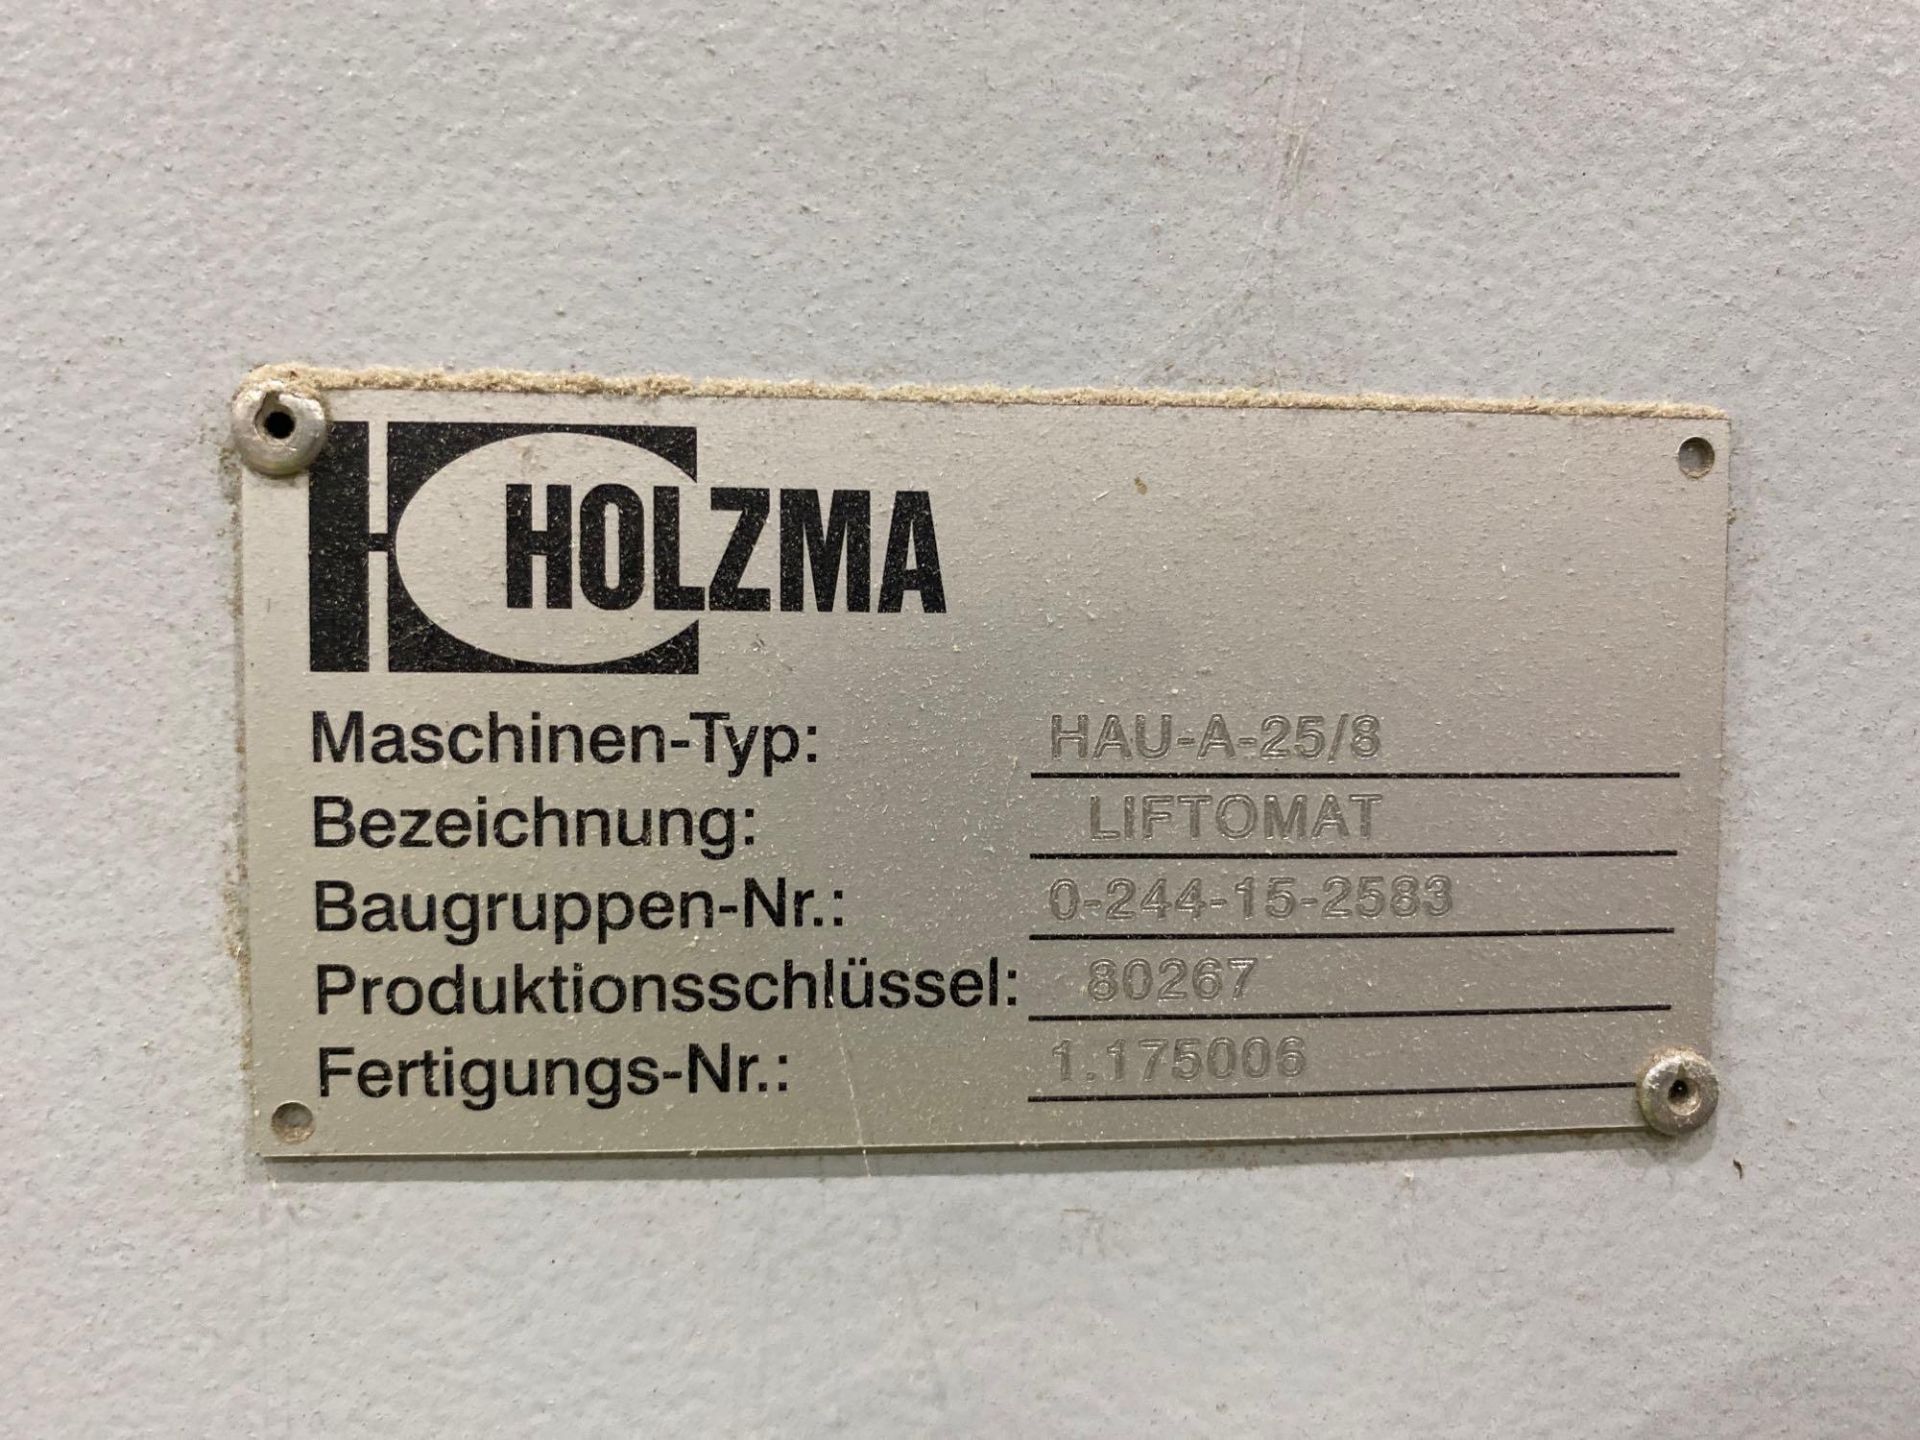 Lot Holzma liftomat HAU-A-25/8 - Bild 9 aus 14